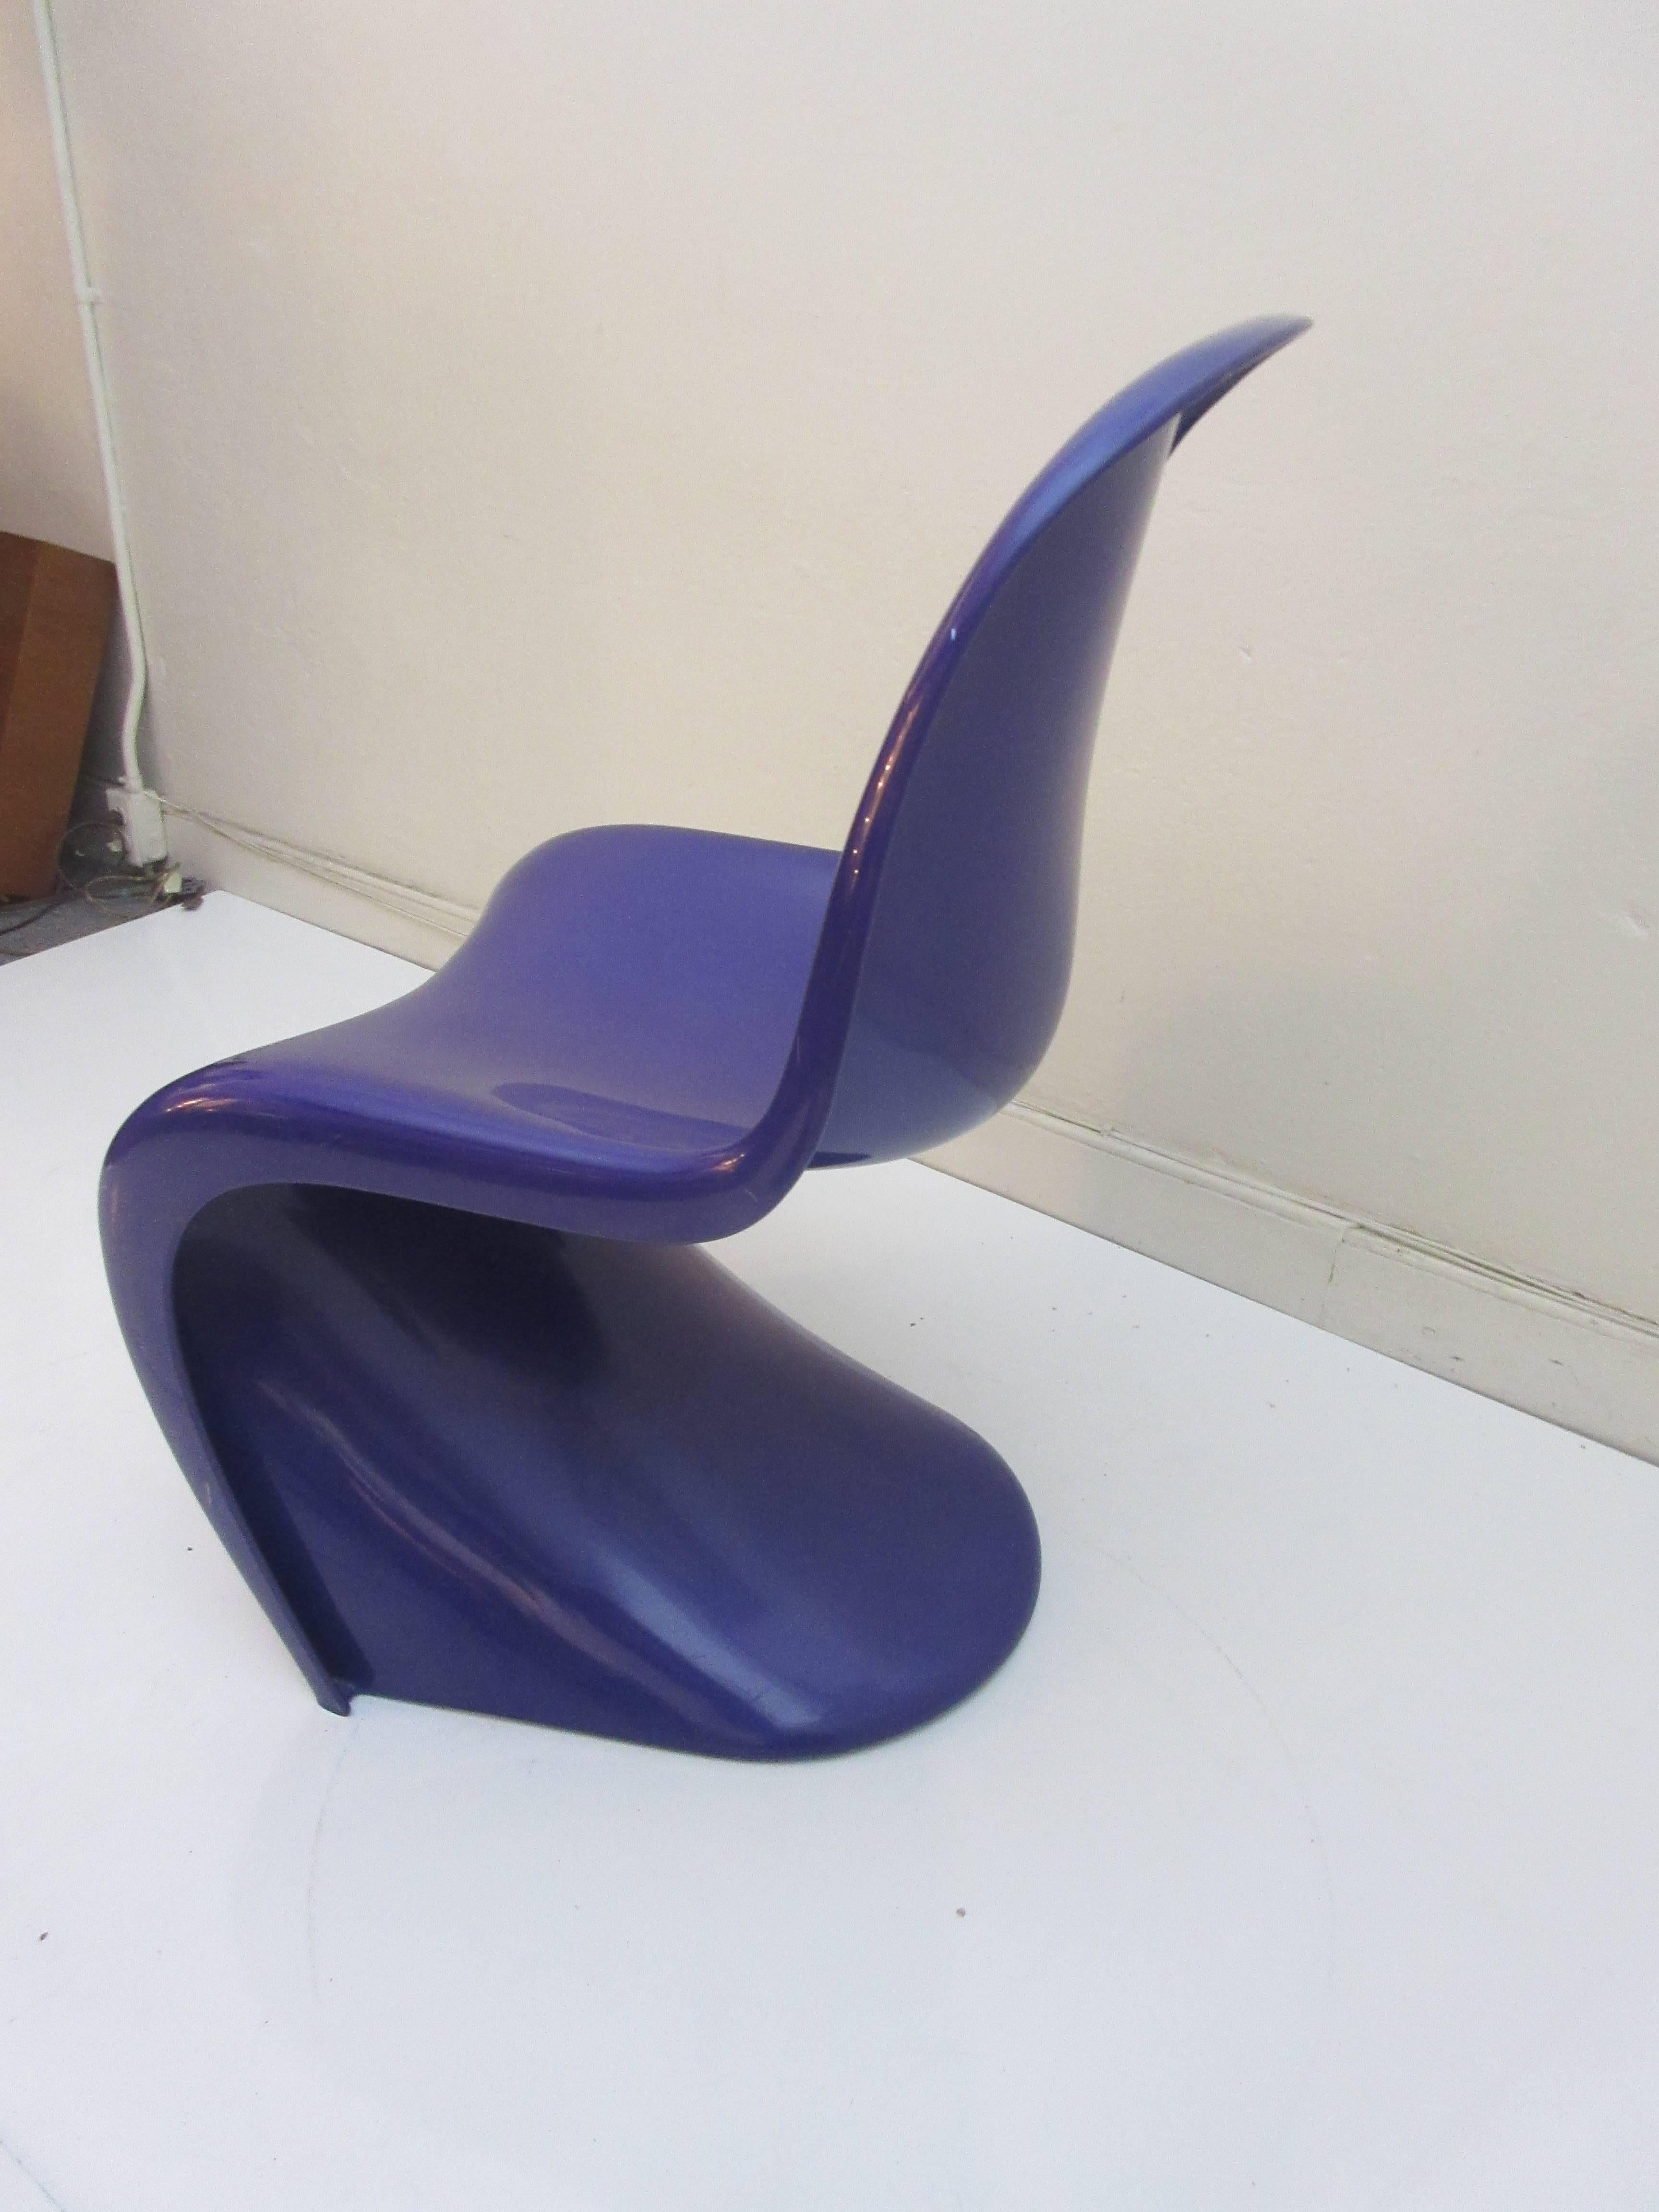 American Verner Panton S Chair for Herman Miller 1976 Rare Purple